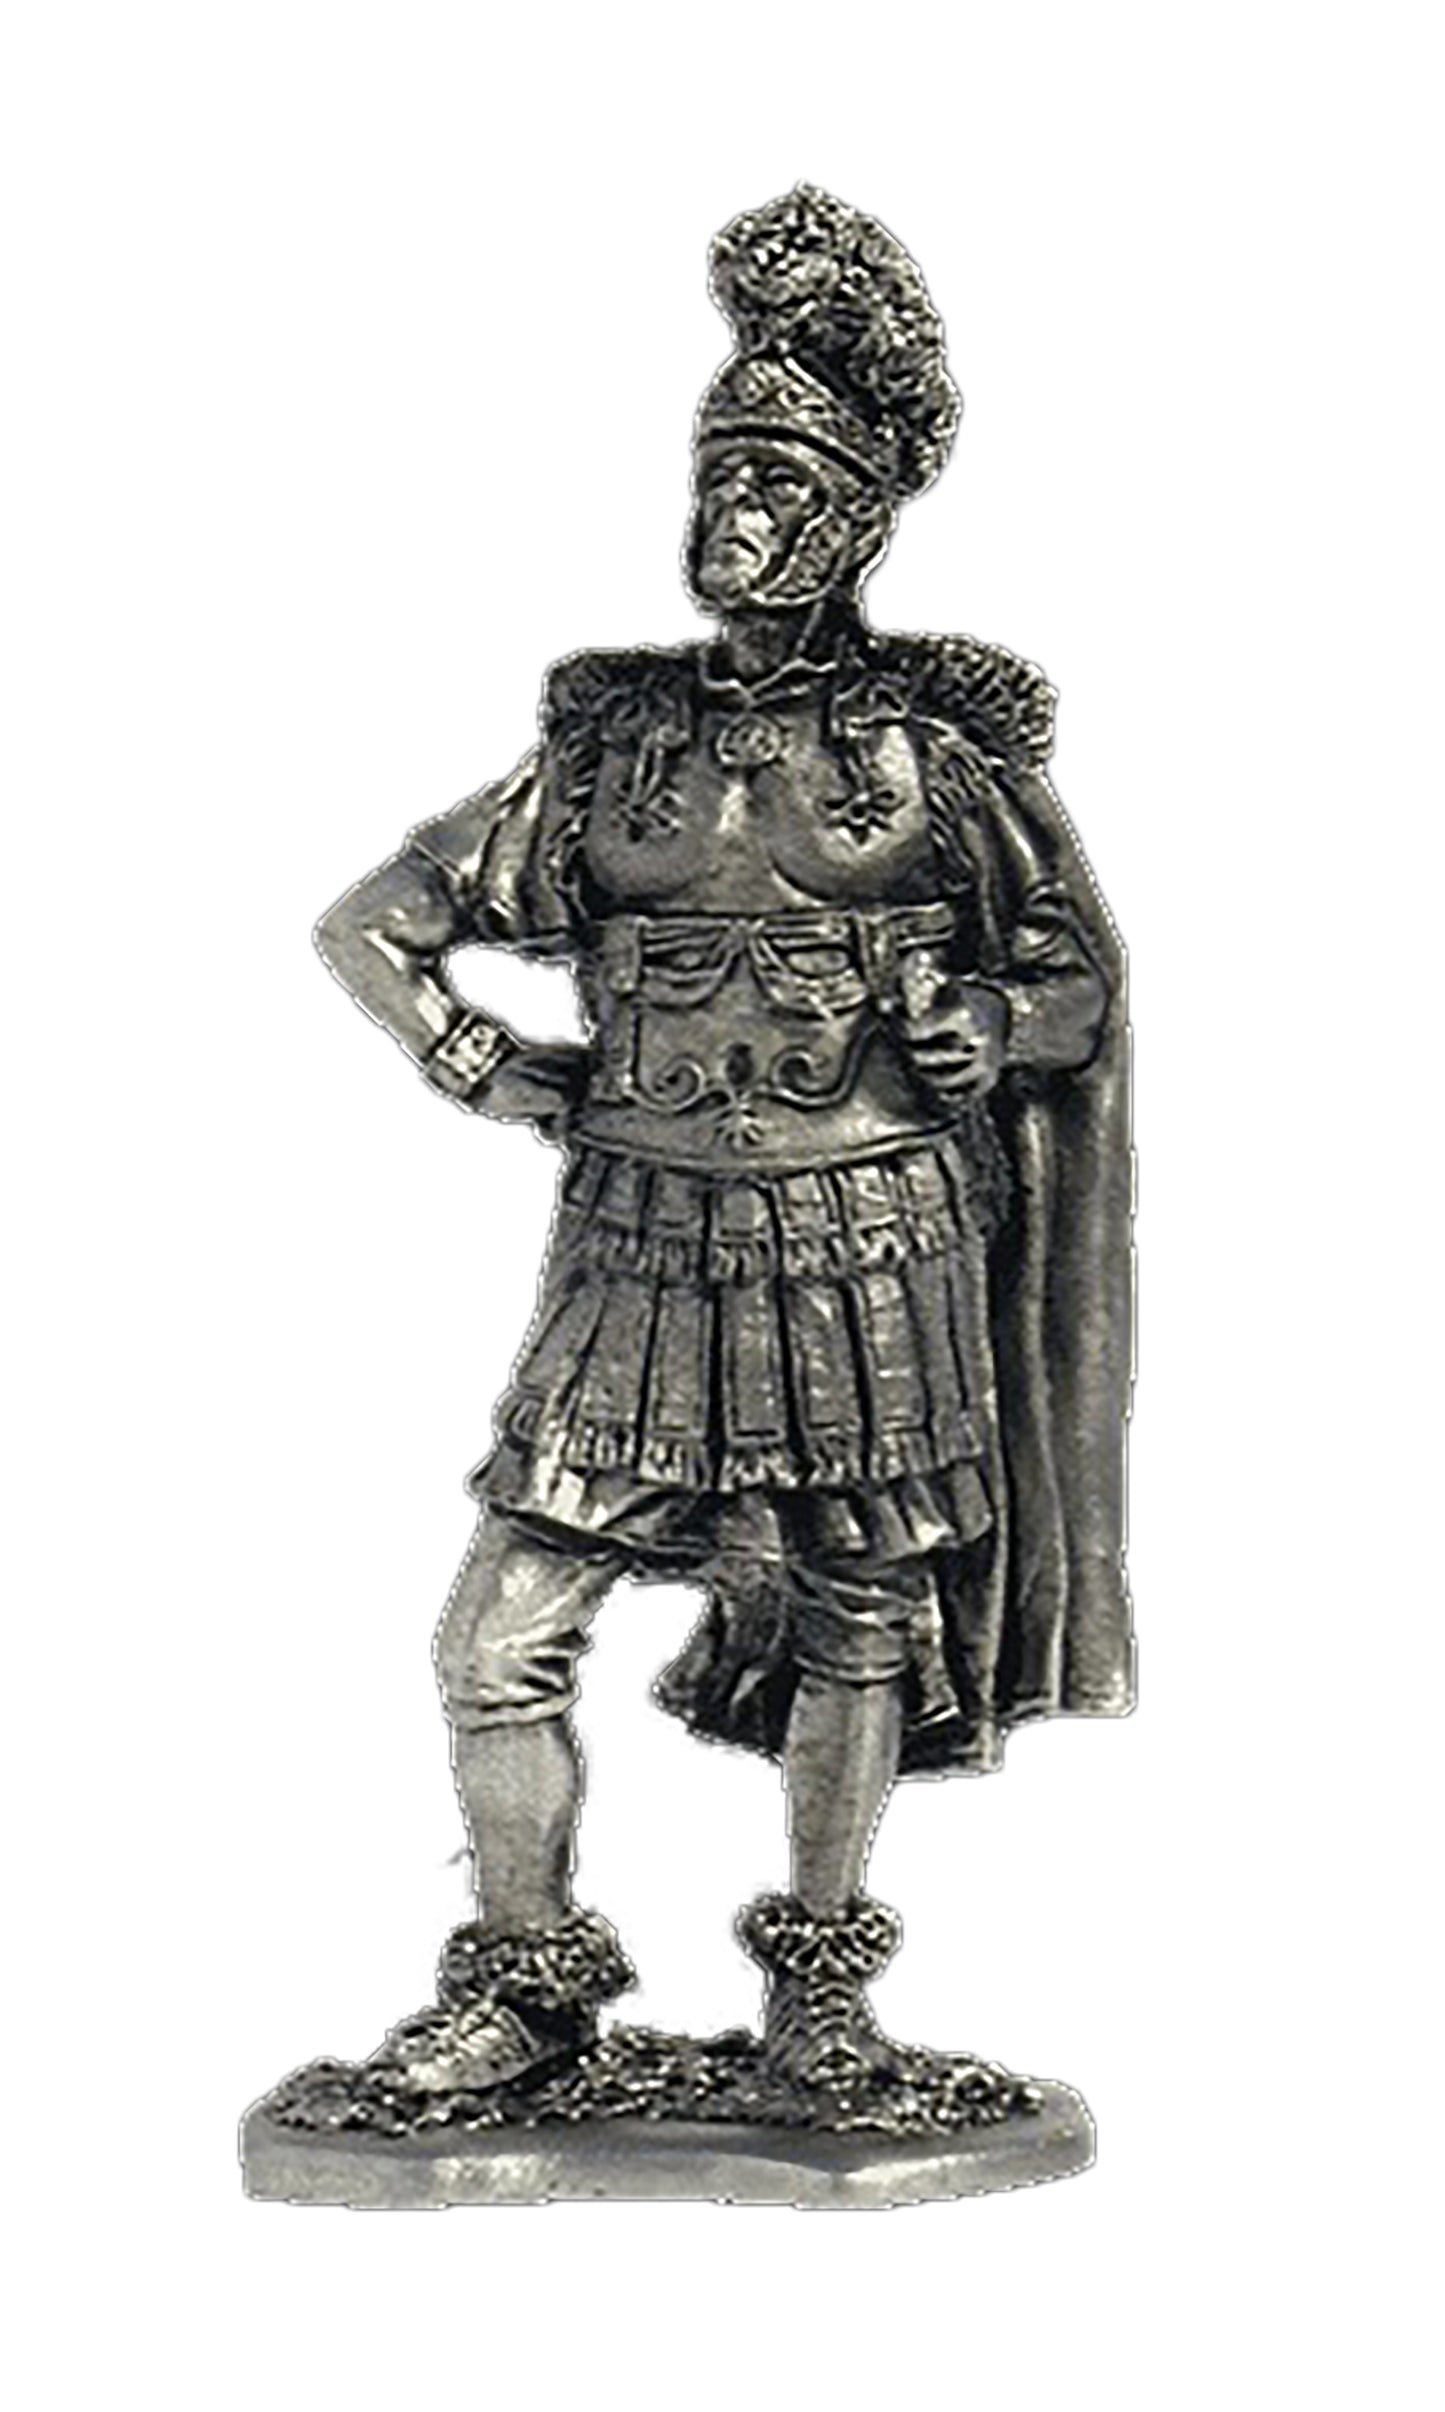 EK-A80 - легат, II легион Августа. Рим, 1 век н.э.